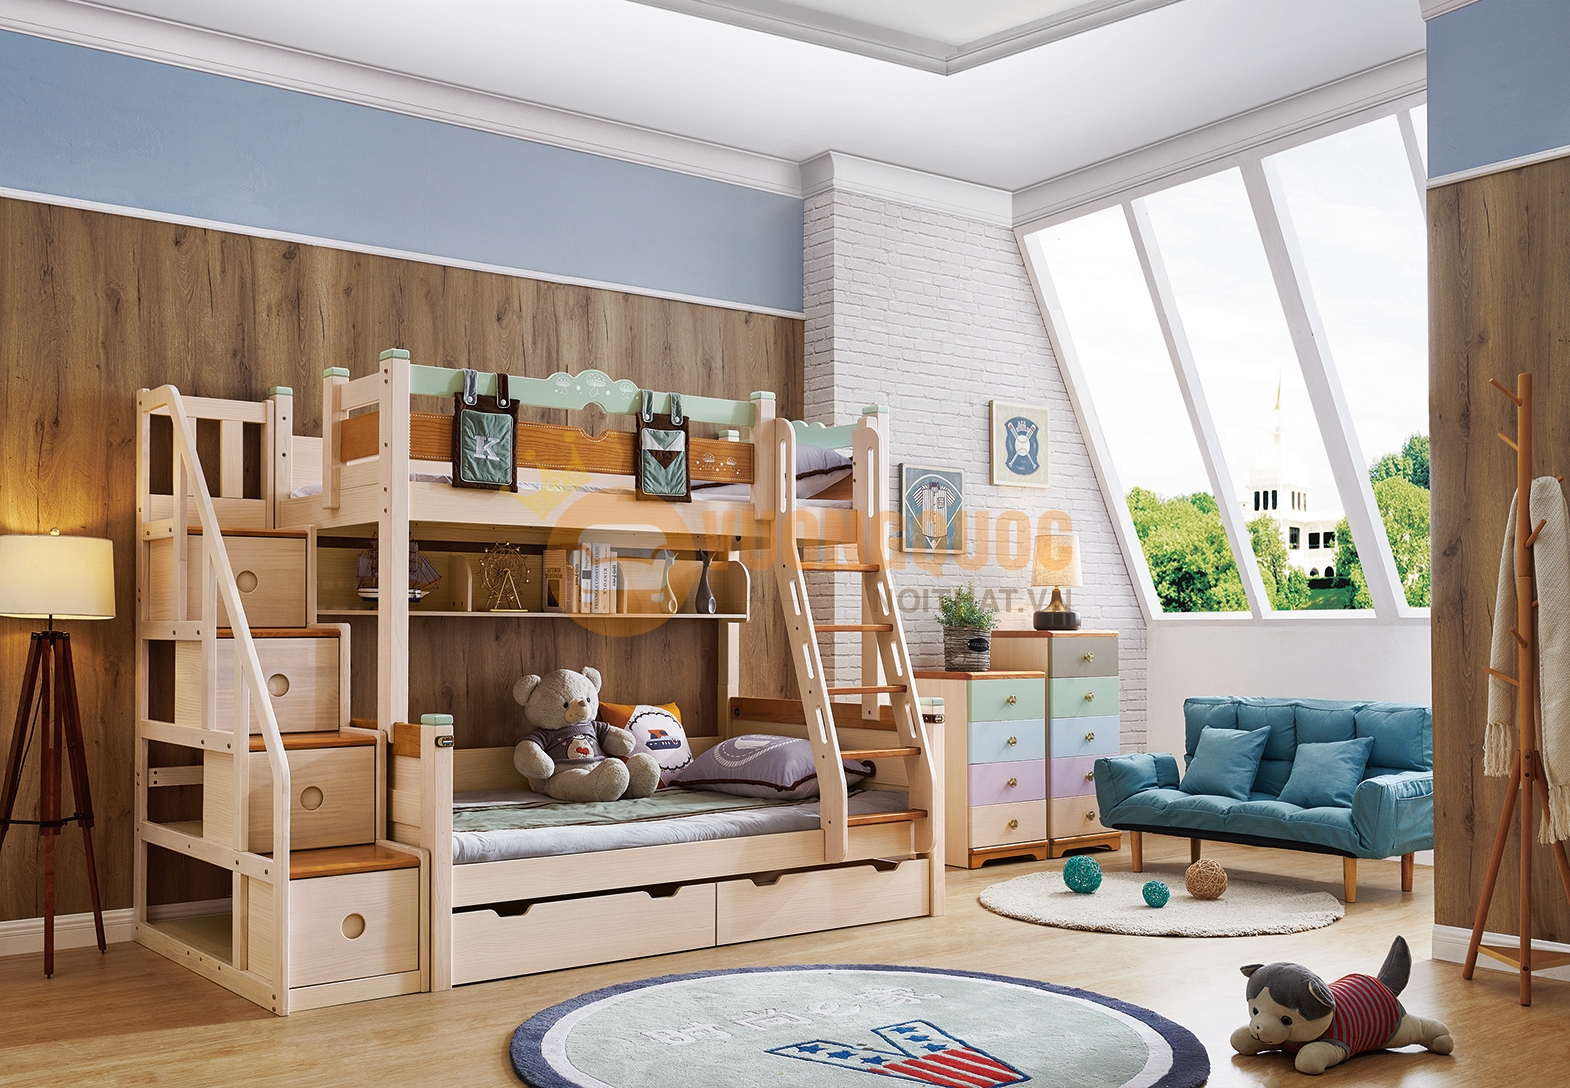 Thiết kế giường tầng bằng gỗ tự nhiên an toàn cho sức khoẻ con người 